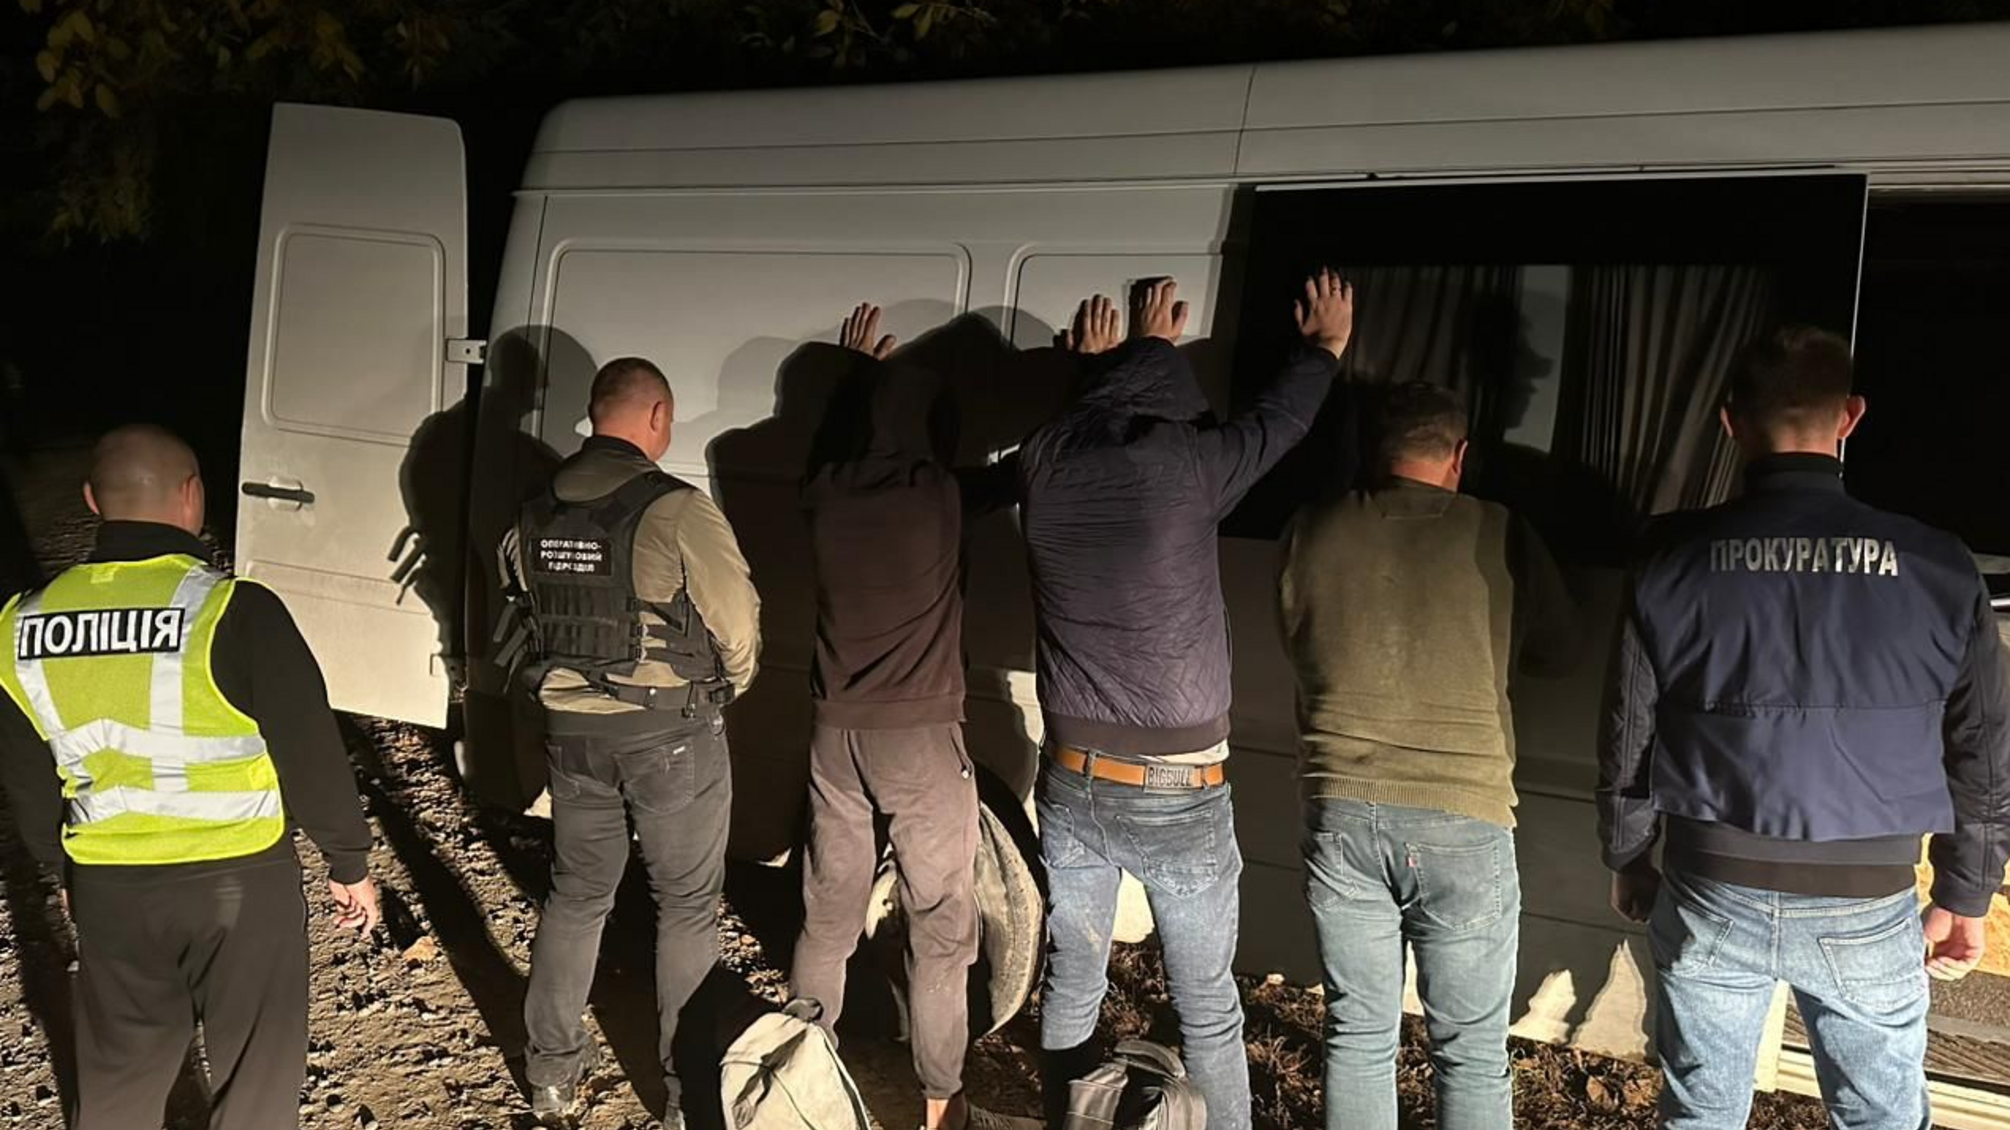 Пограничники задержали депутата-таксиста, который за деньги переправлял уклонистов через границу